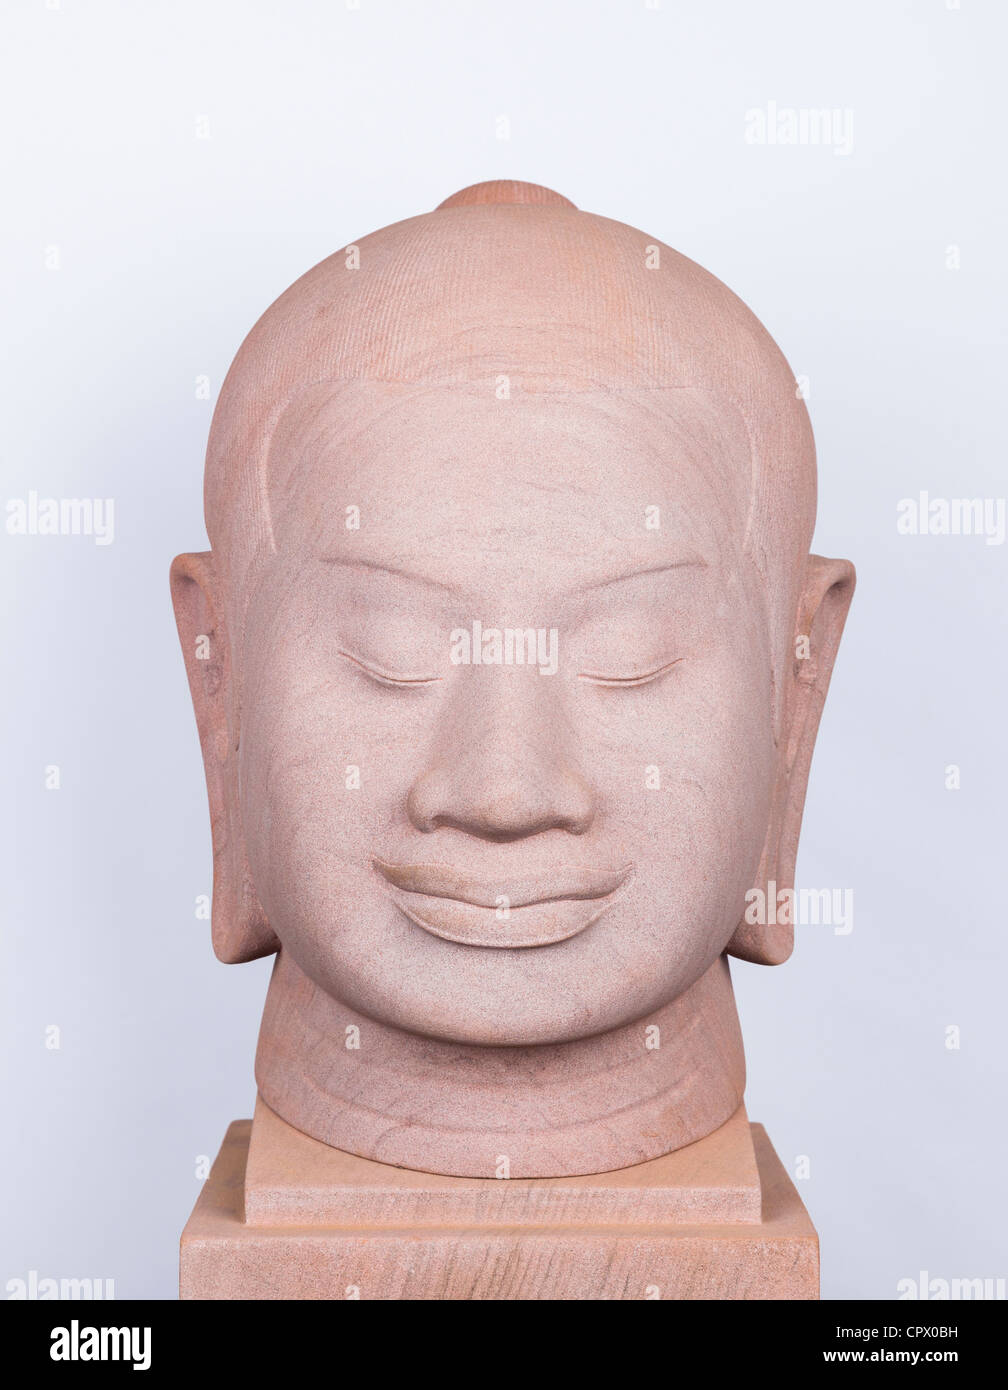 Sandstein-Kopf des Khmer König Jayavarman VII vor weißem Hintergrund - Provinz Siem Reap, Kambodscha Stockfoto